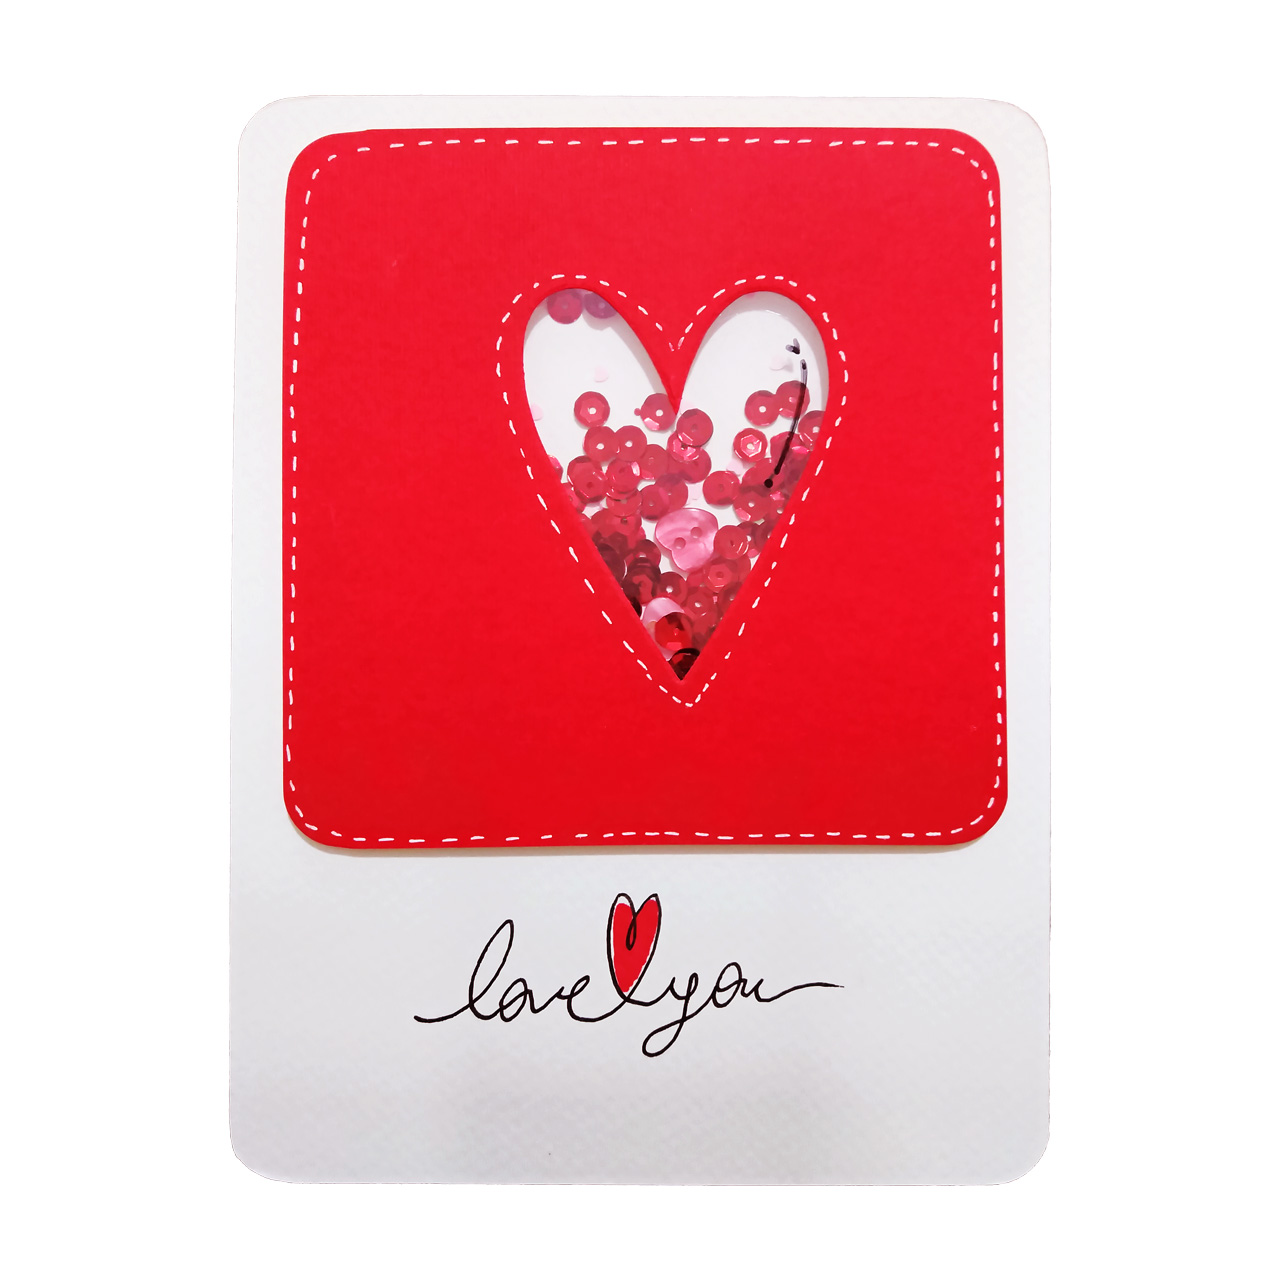 کارت پستال دست ساز آبی عمیق مدل Love1